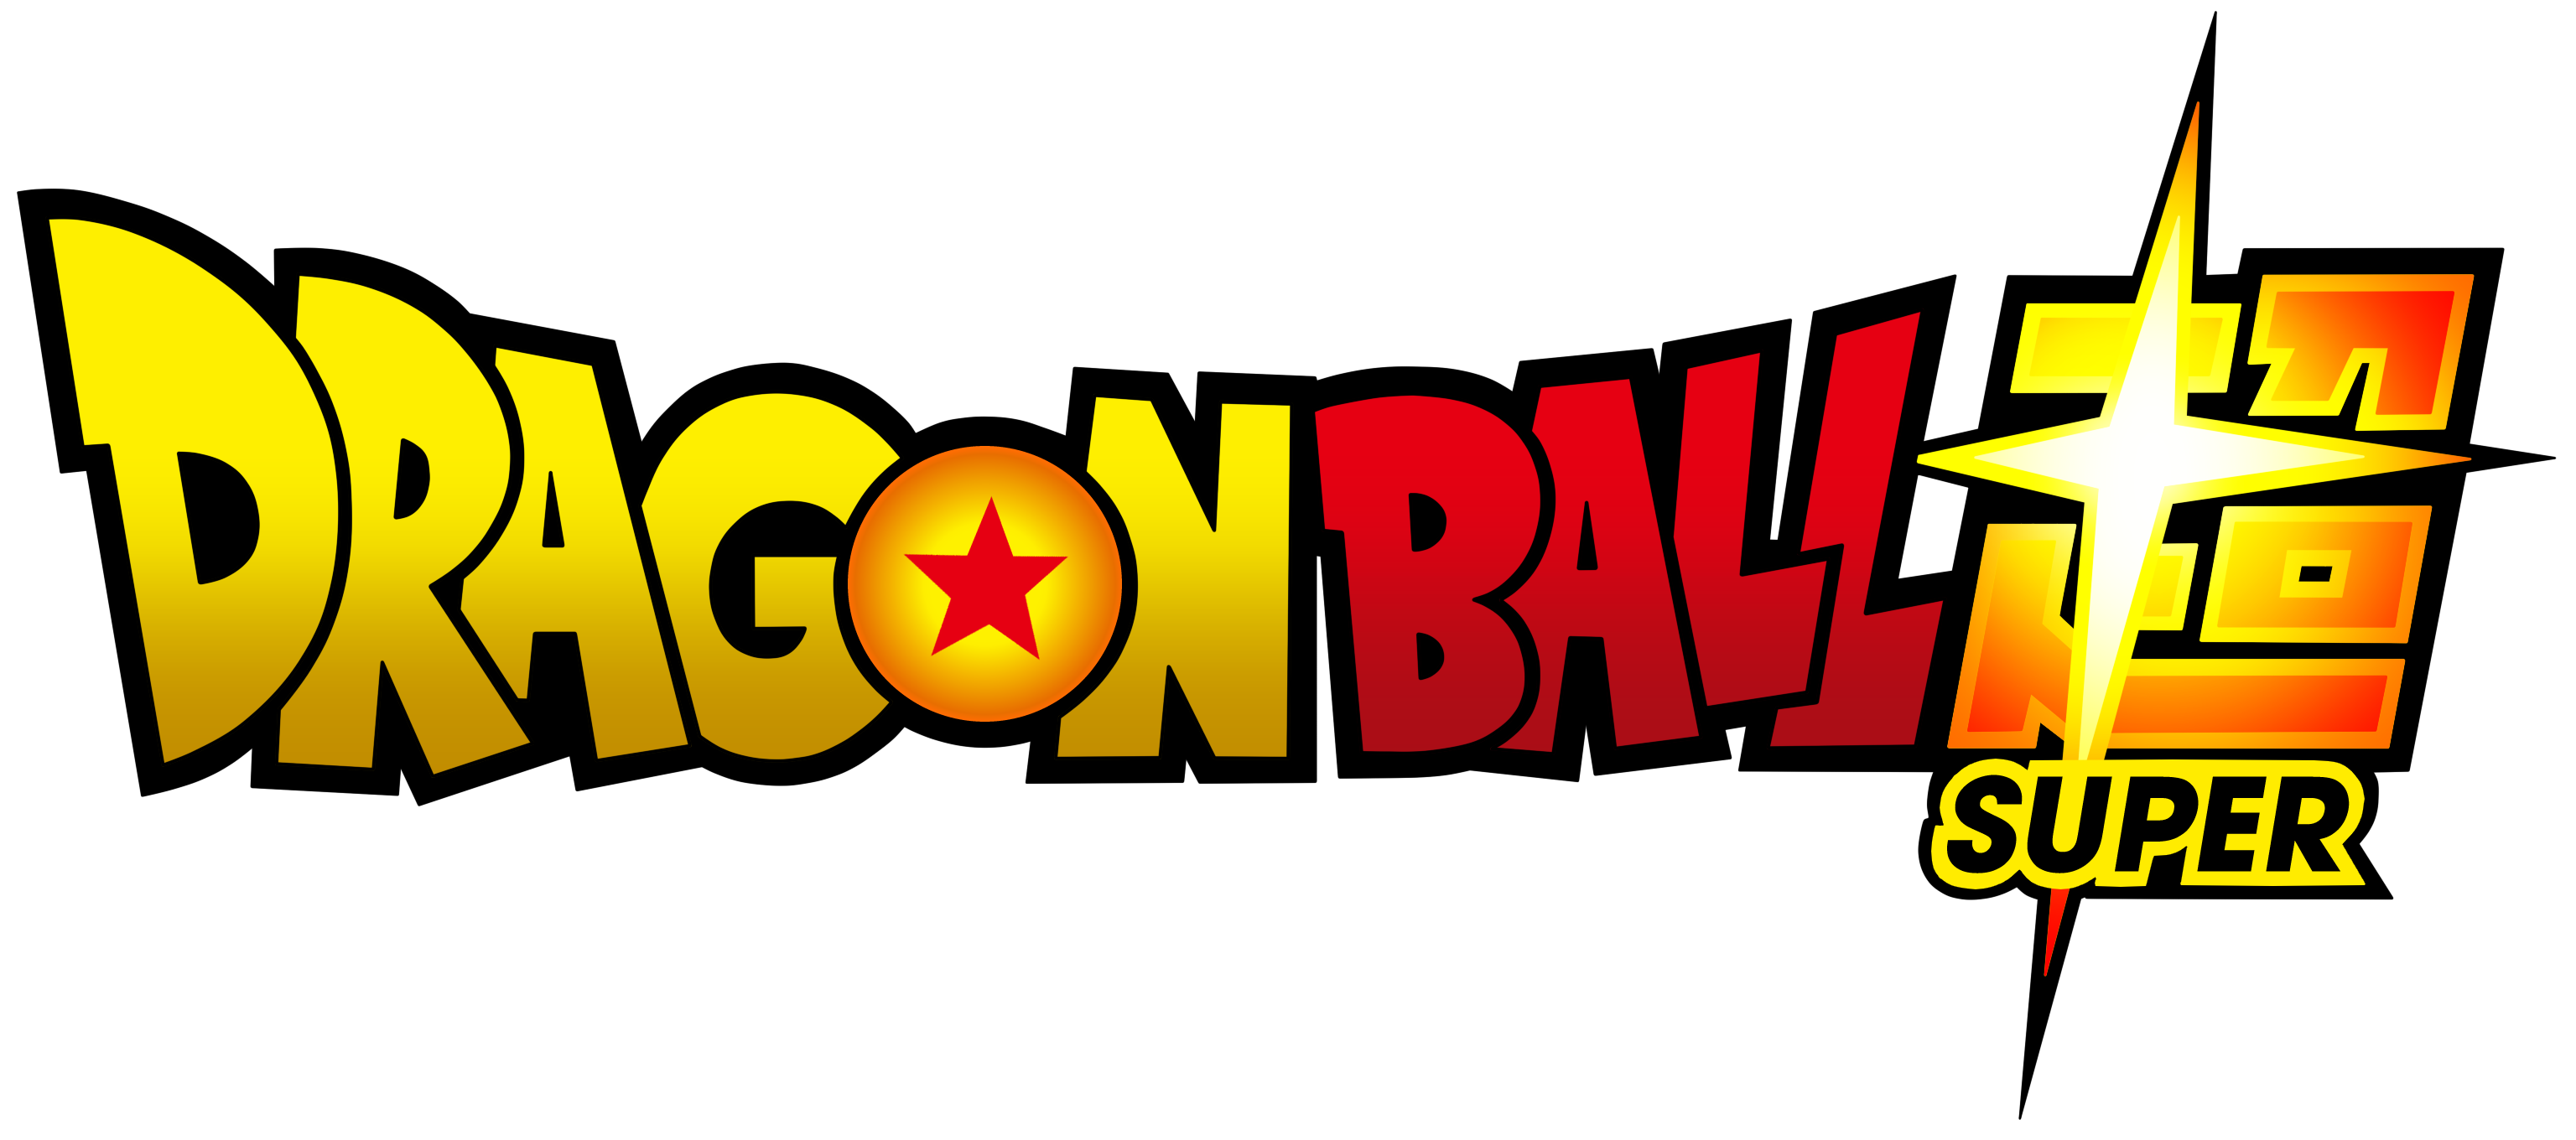 Dragon Ball Super Logo - Logodownload.org Download de ...